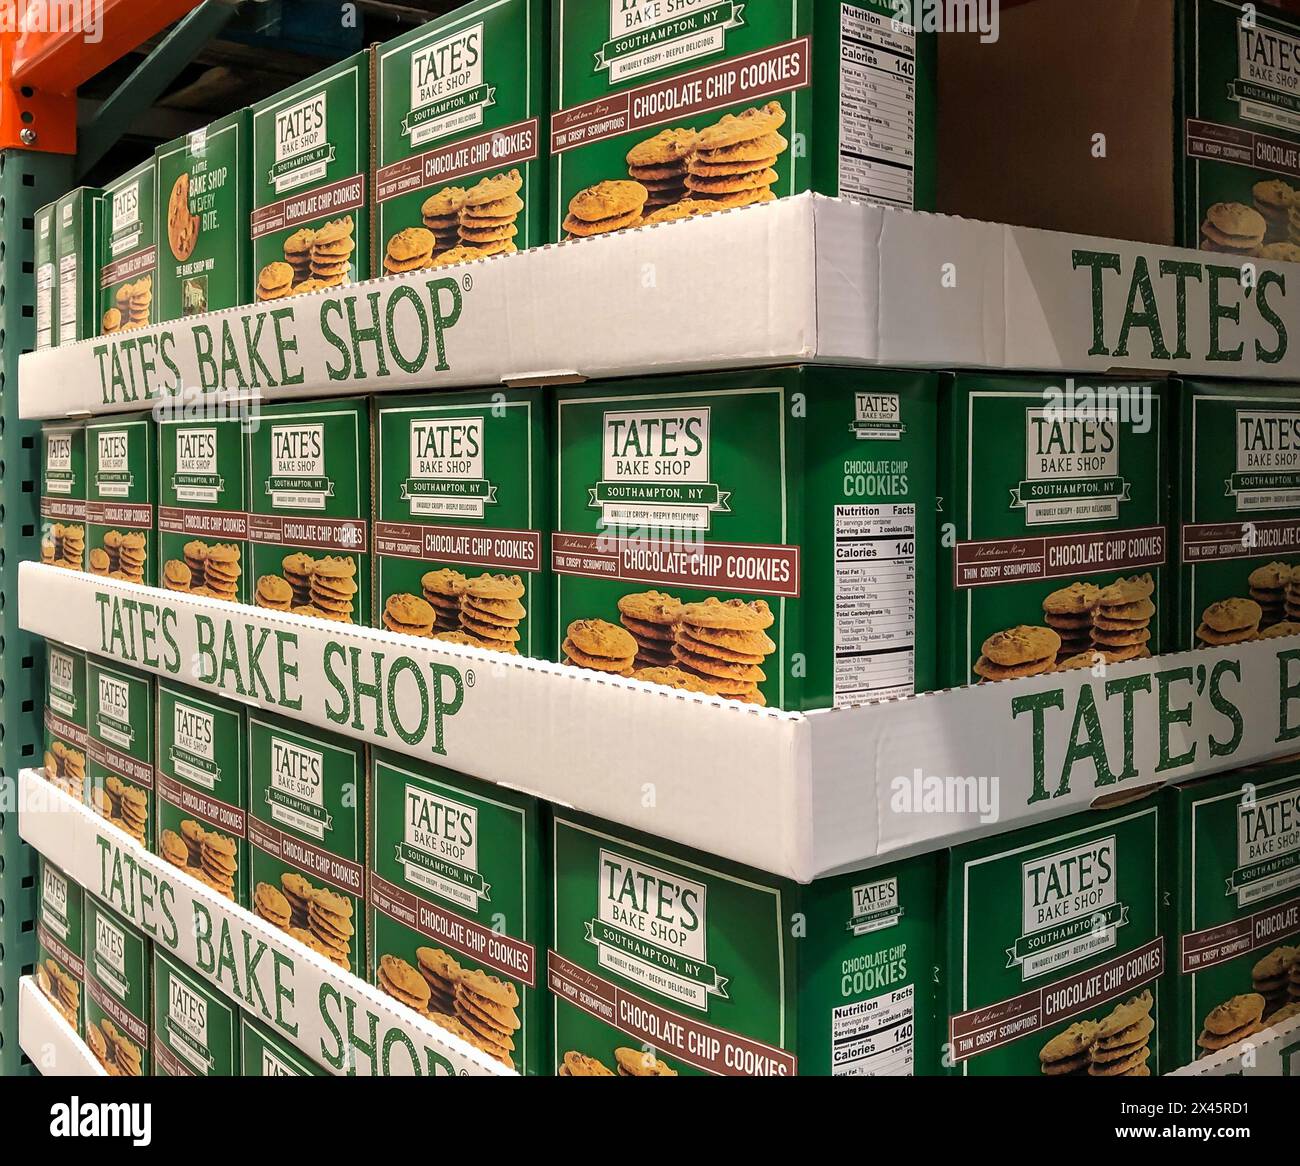 BAXTER, MN - 3. Feb 2021: Schachteln mit Tates Bake Shop Schokoladenchips-Kekse zur Ausstellung und zum Verkauf in einem Einzelhandelsgeschäft. Stockfoto